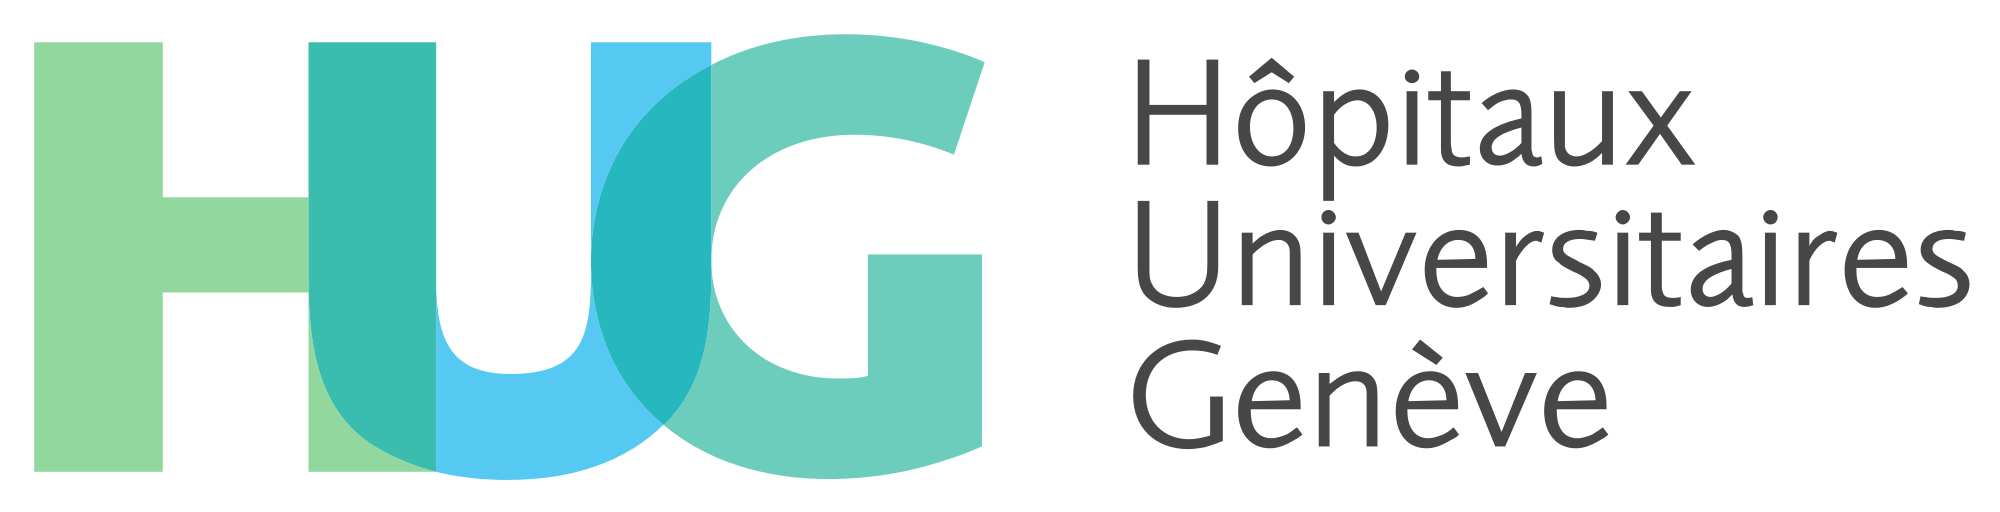 Hiug Logo - Hôpitaux universitaires de Genève 2015 logo.svg